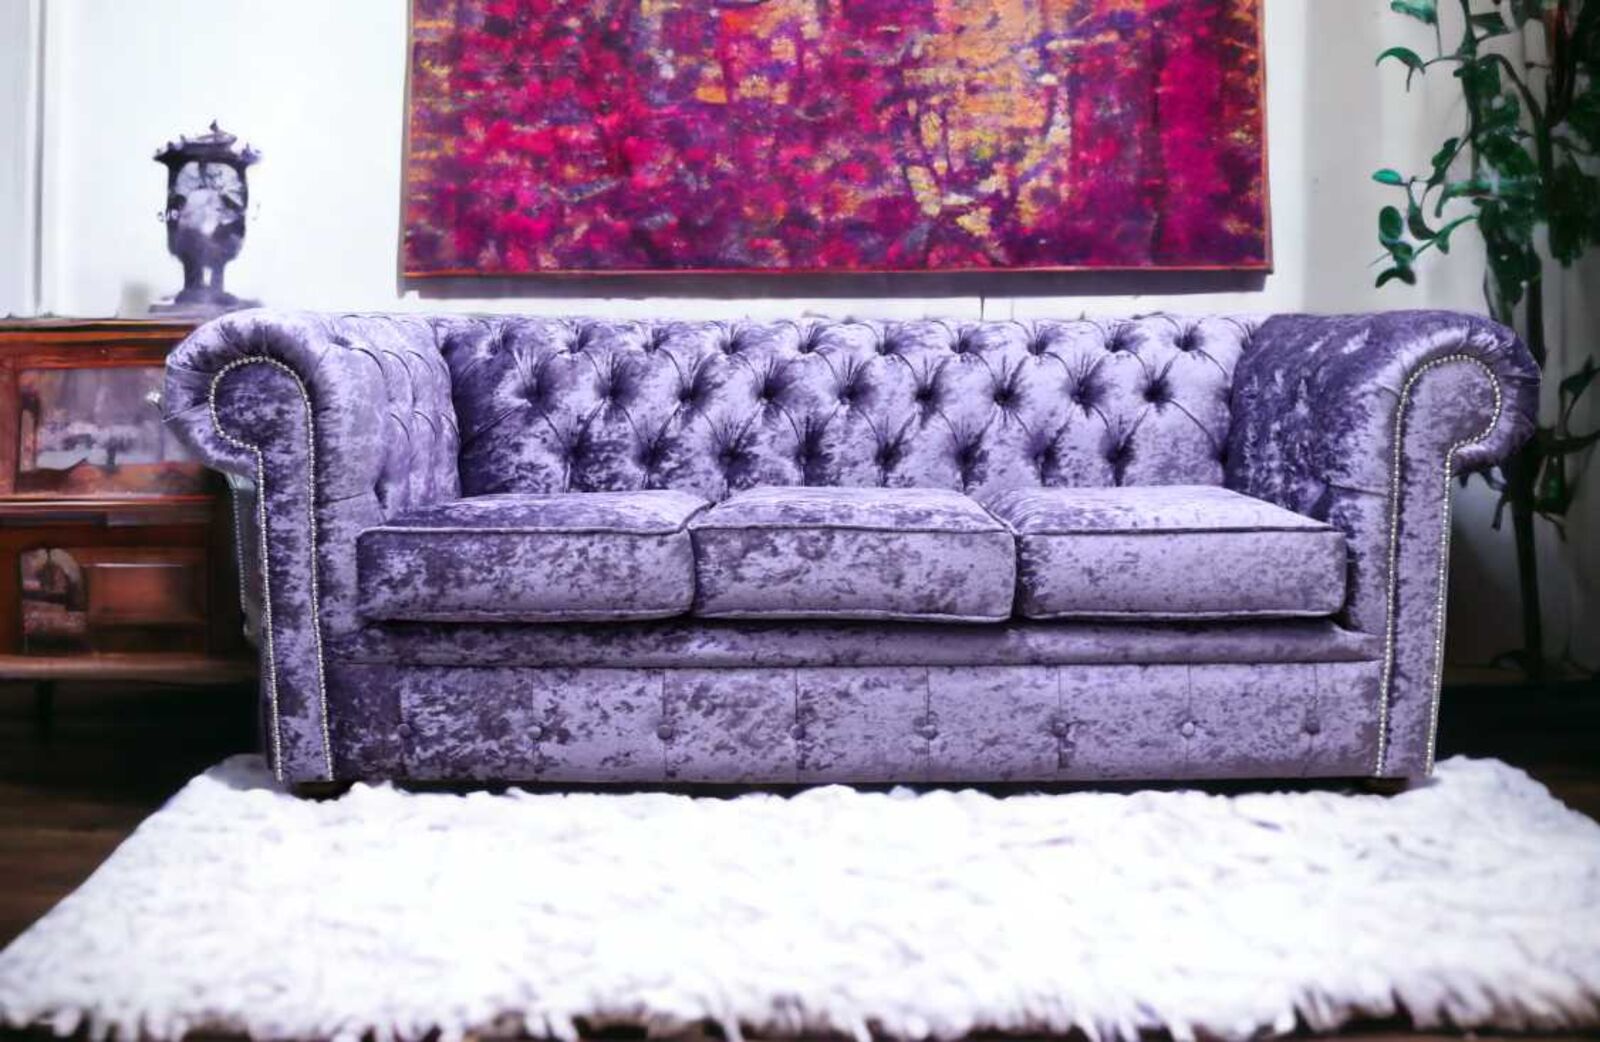 Product photograph of Chesterfield 3 Seater Settee Shimmer Grape Velvet Sofa Offer from Designer Sofas 4U